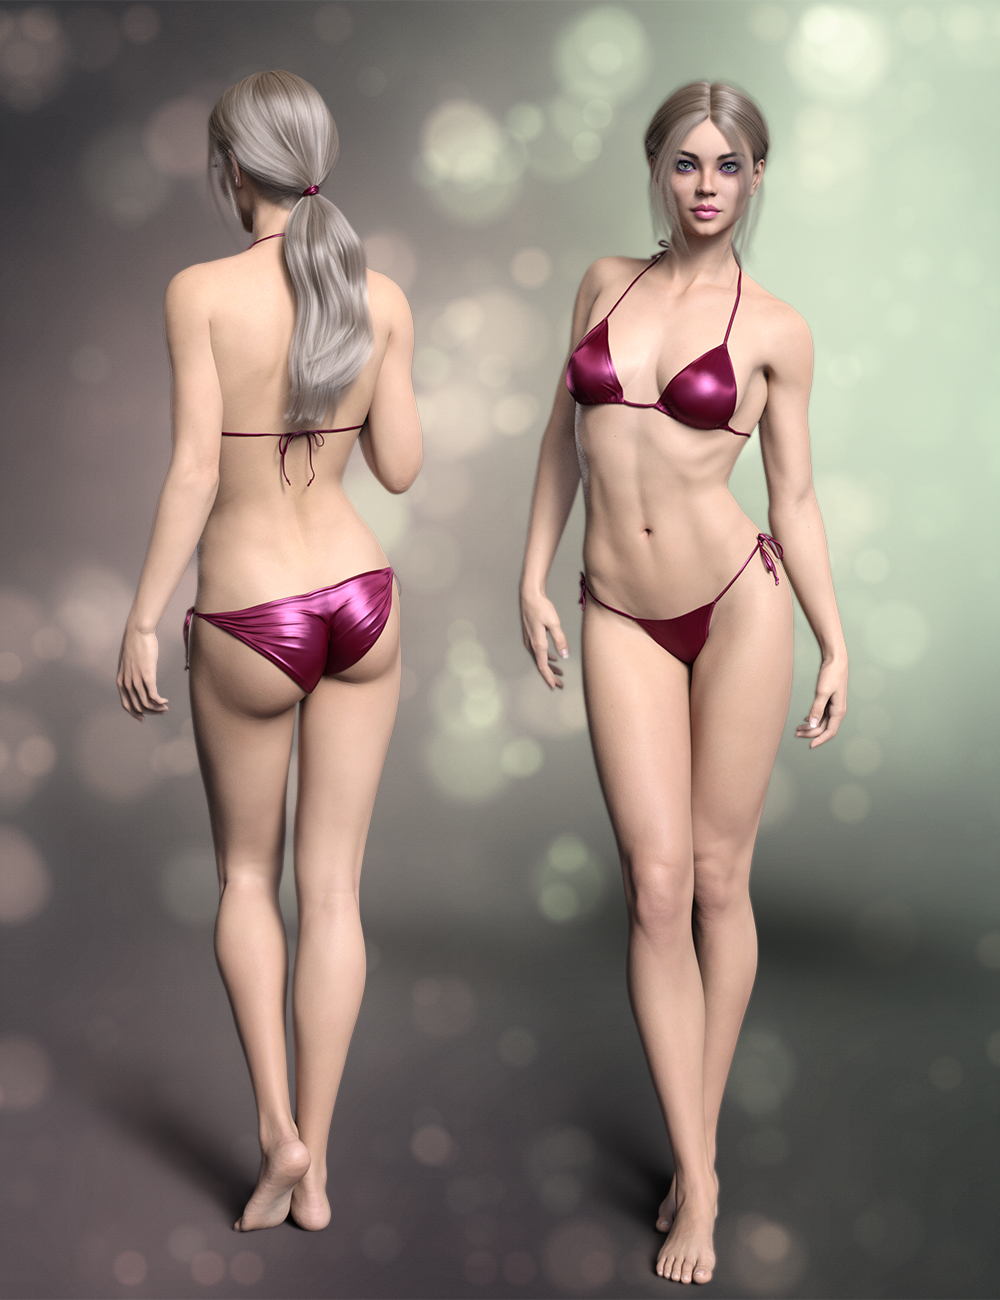 FWSA Krisandra HD for Zelara 8 by: Fred Winkler ArtSabby, 3D Models by Daz 3D